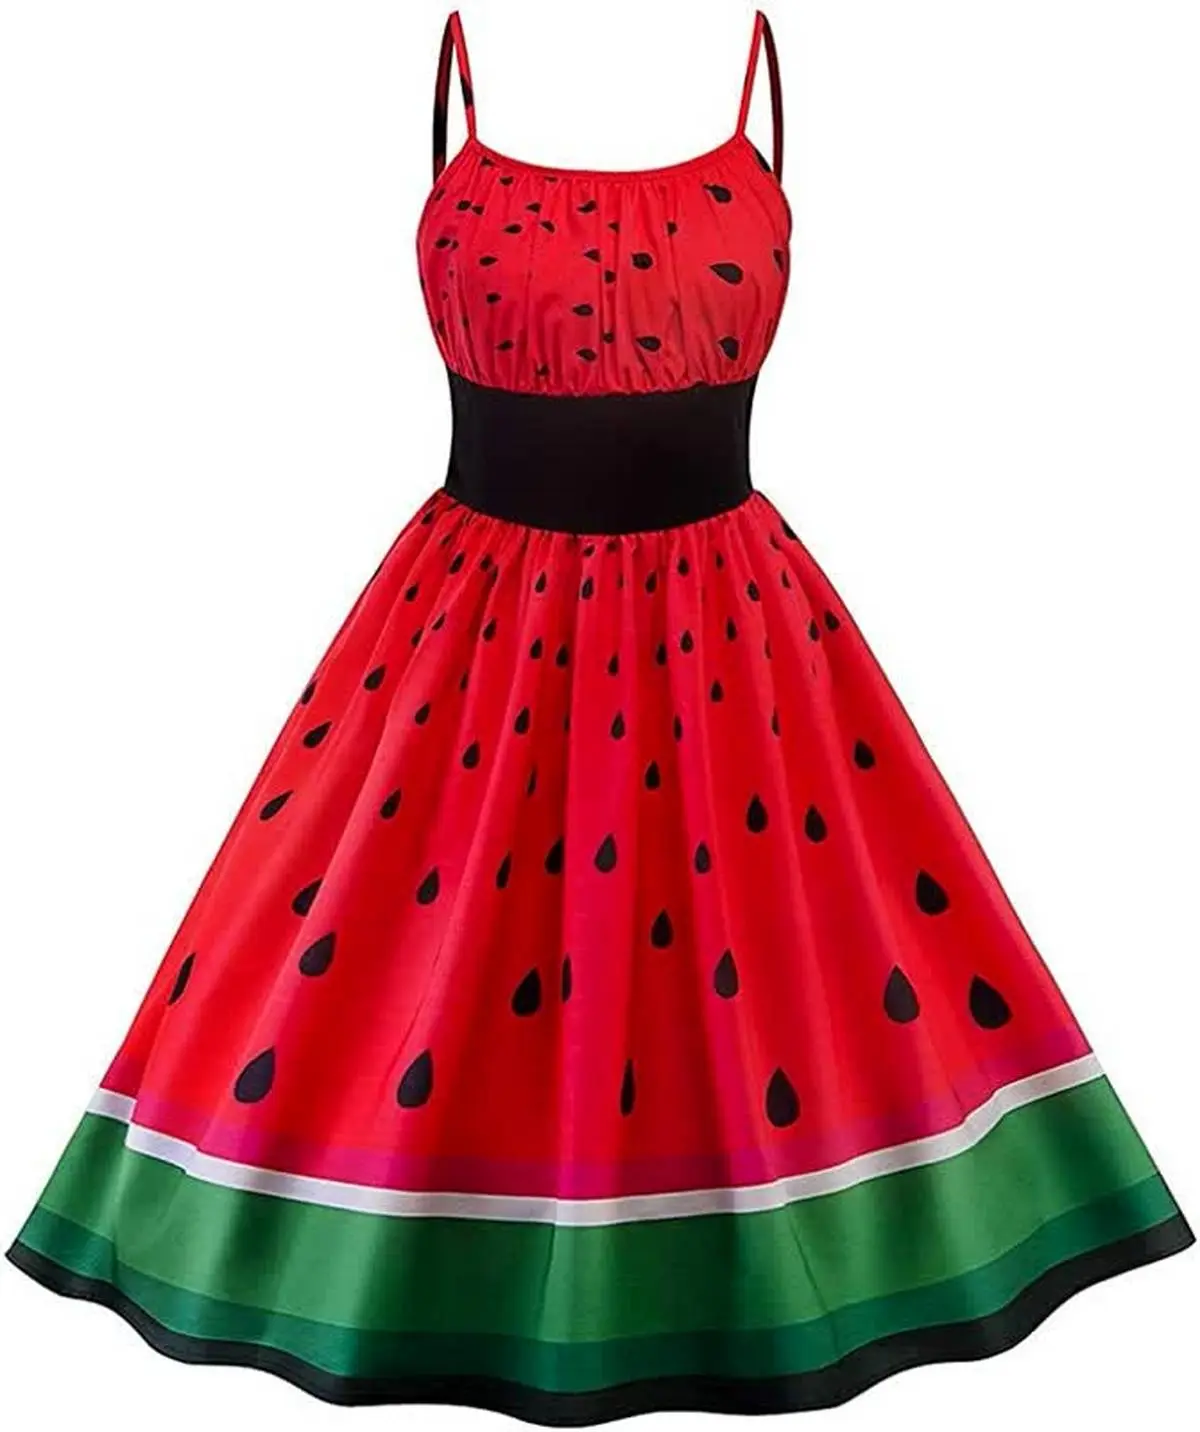 بهترین مدل لباس های شب یلدا | با طرح هندوانه زیباترین لباس های شب یلدا+ تصاویر